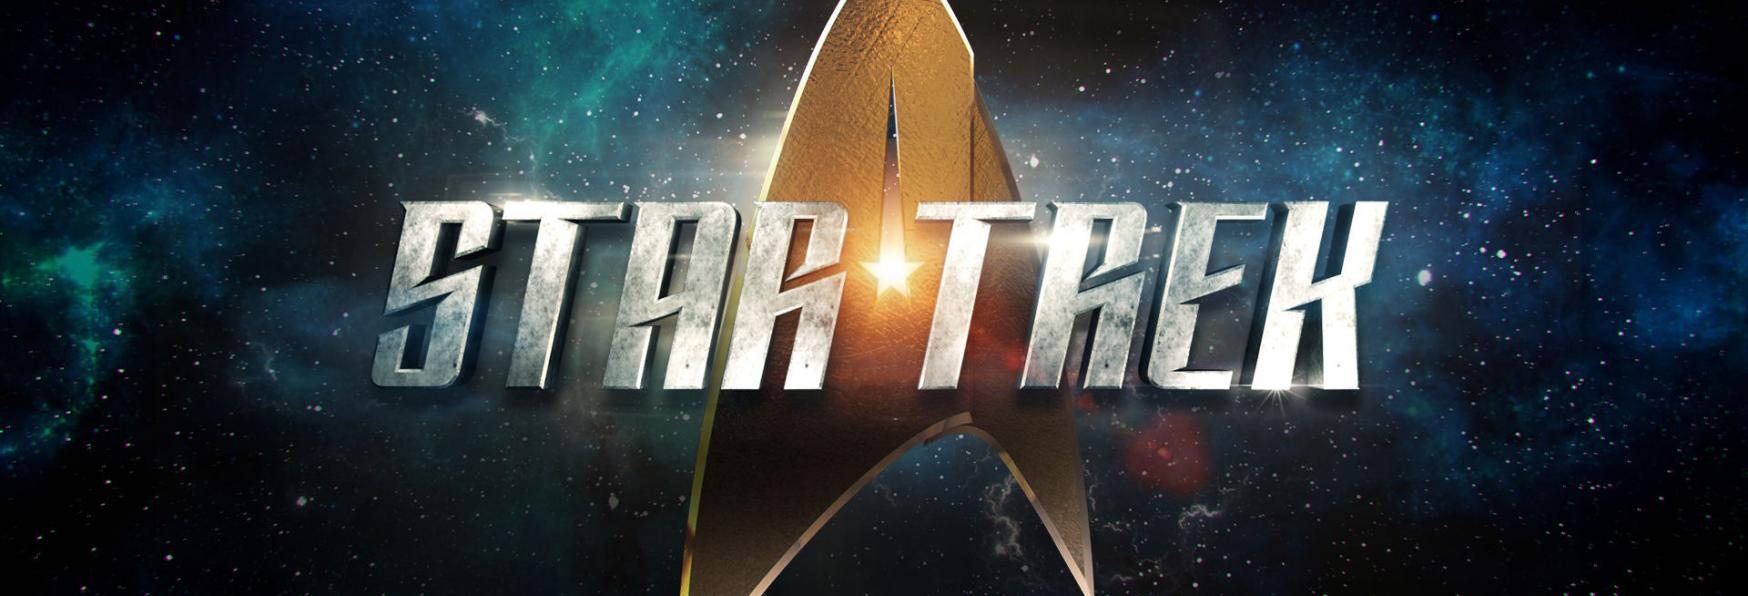 Star Trek: ecco tutti i Prodotti e gli Eventi in arrivo nel corso del 2022